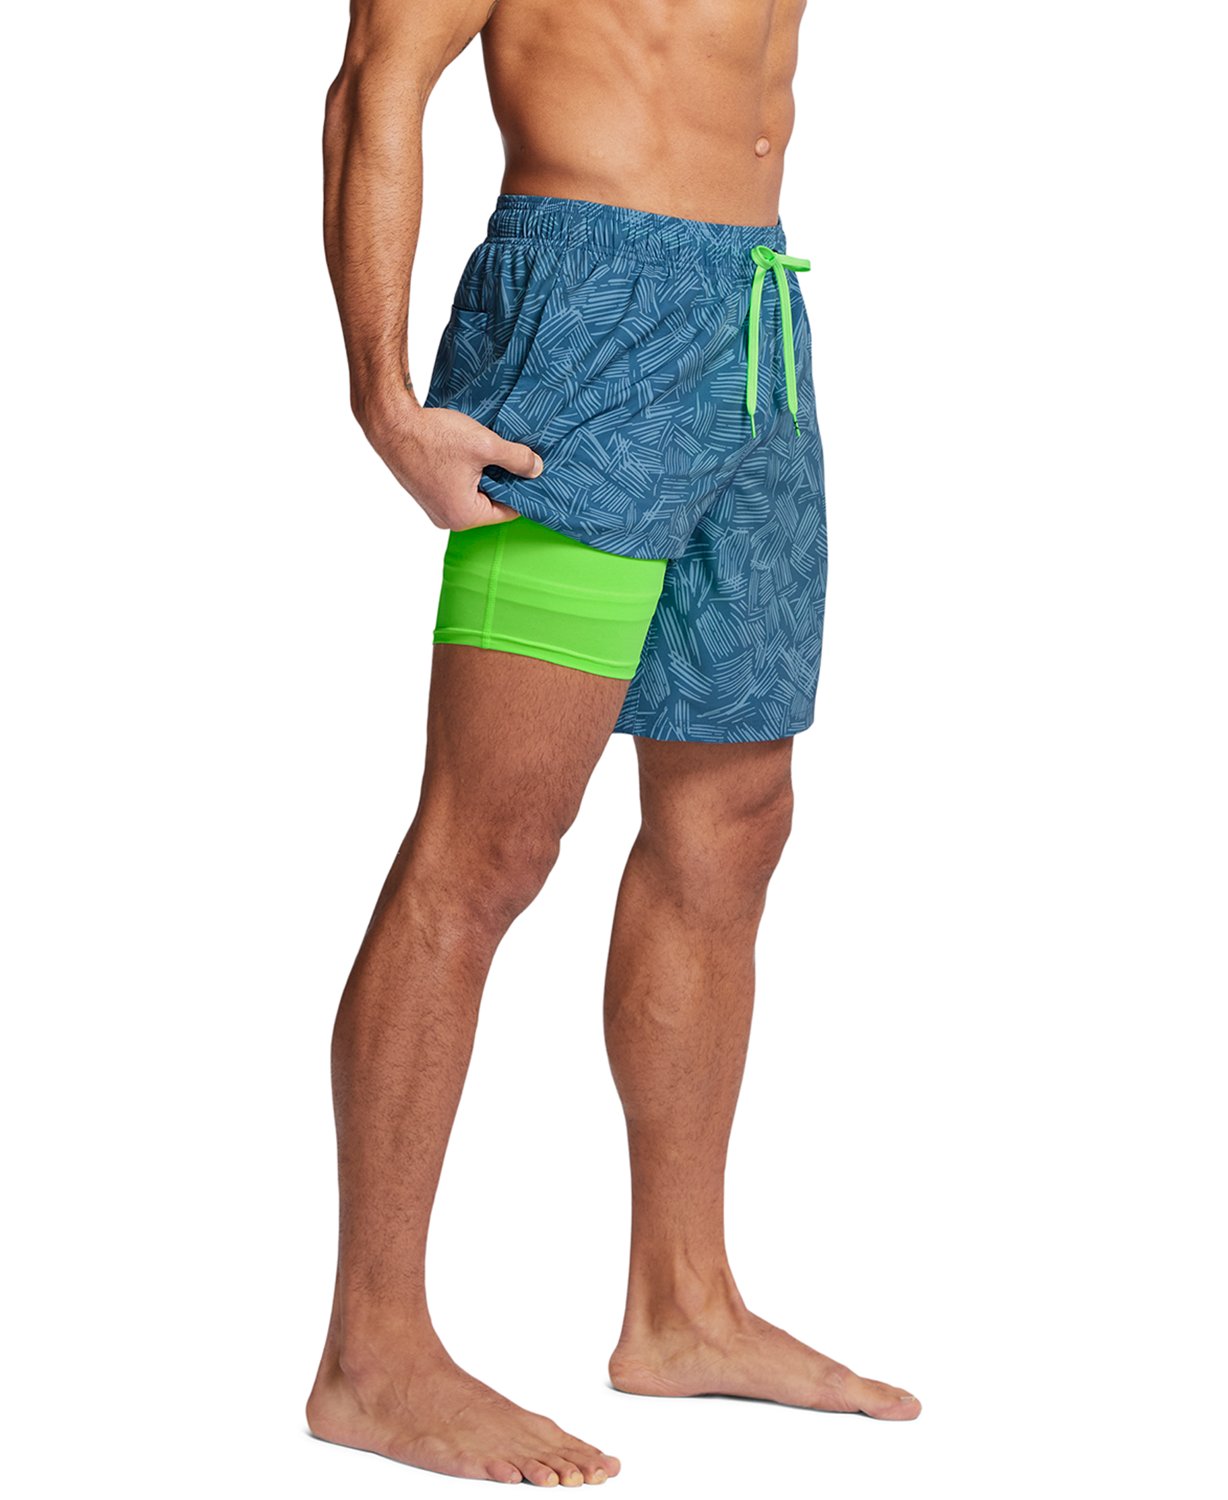 Men's Compression Shorts & Underwear